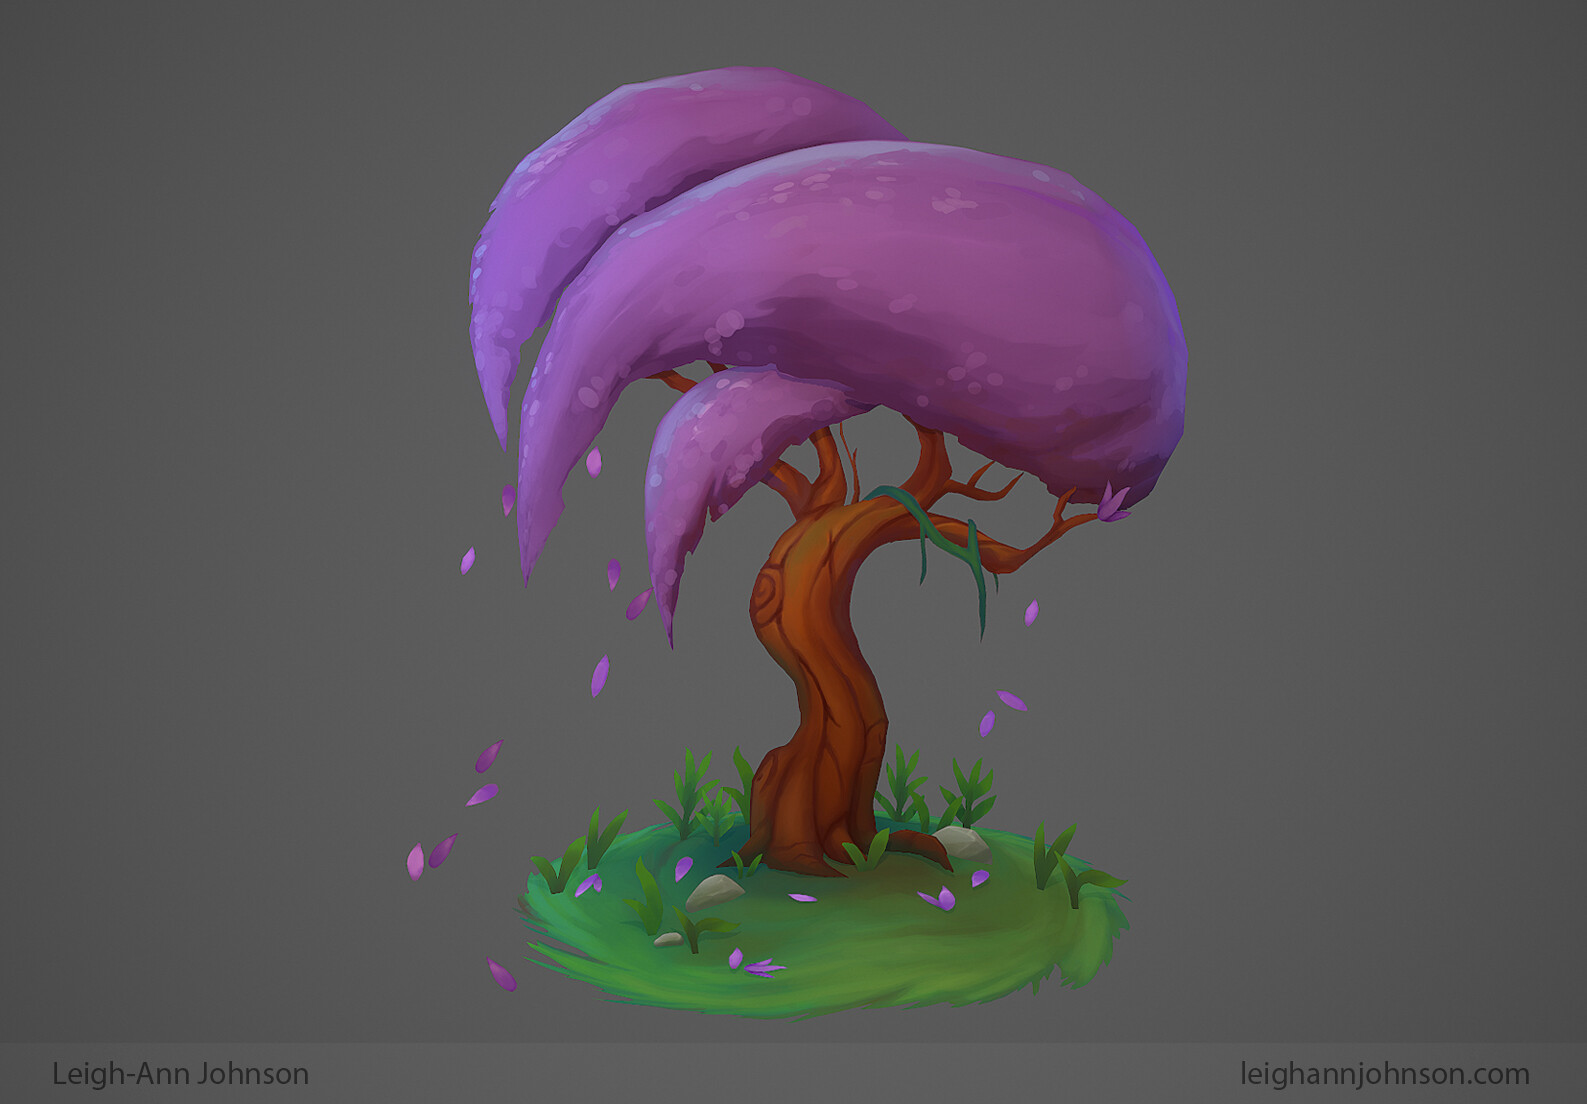 Steam Artwork Design - Cherry Blossom by Qenoxis on DeviantArt